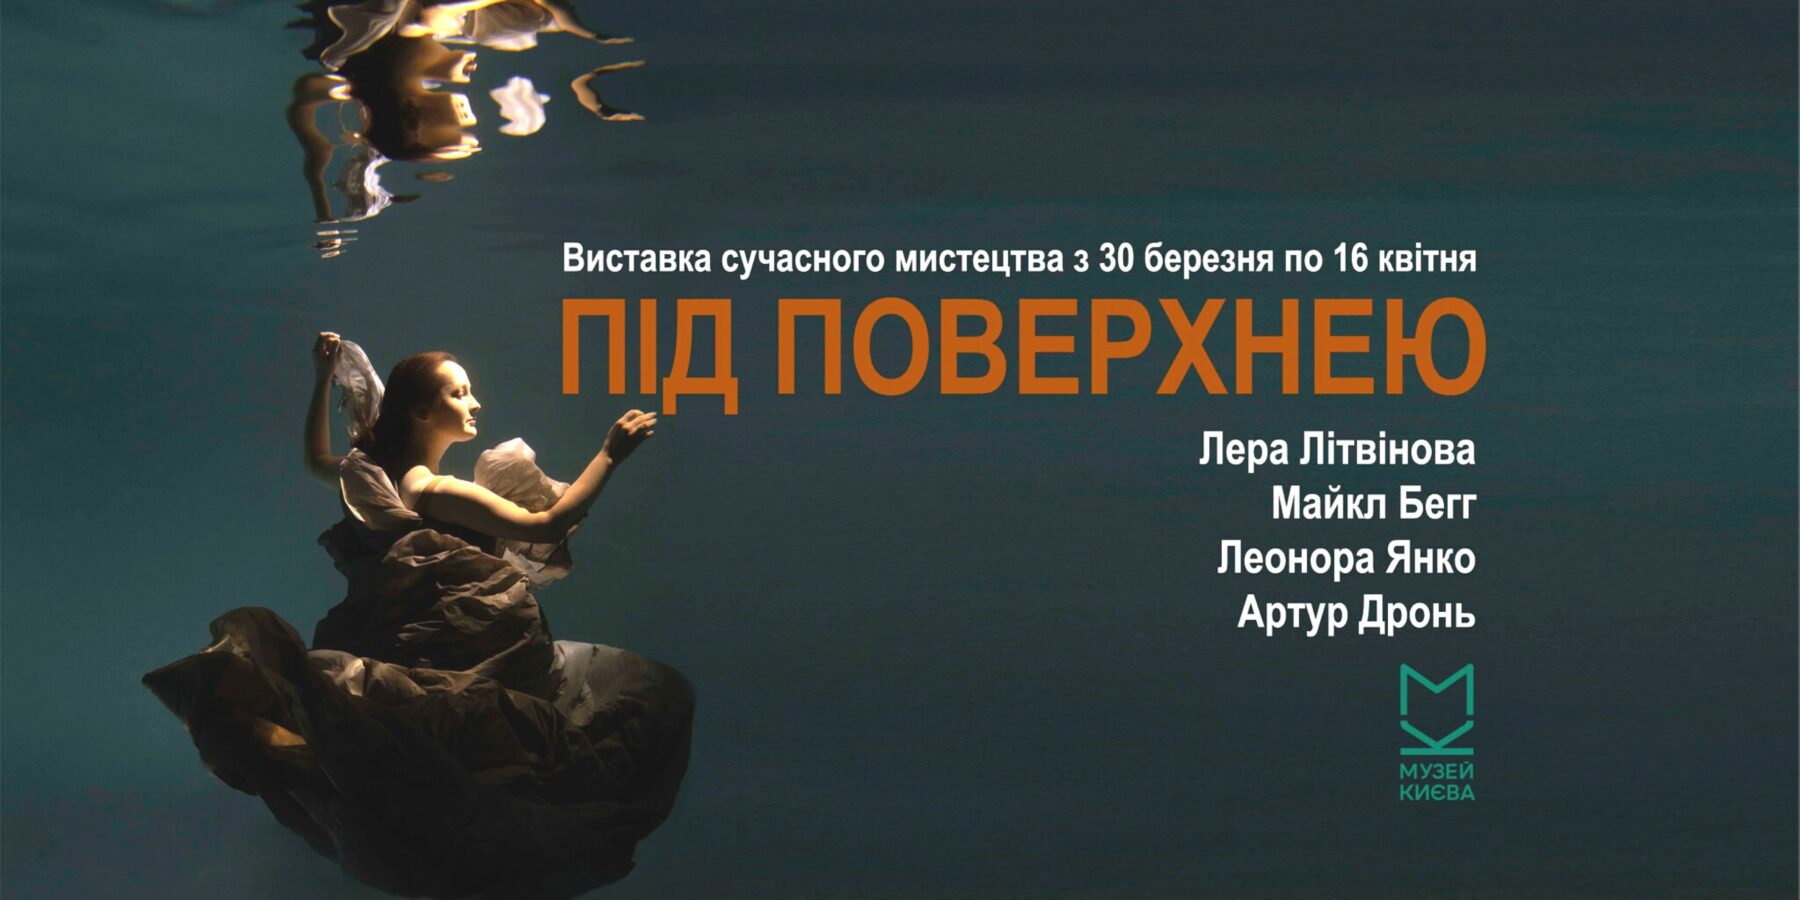 У Києві пройде презентація мистецького проєкту “Під поверхнею”